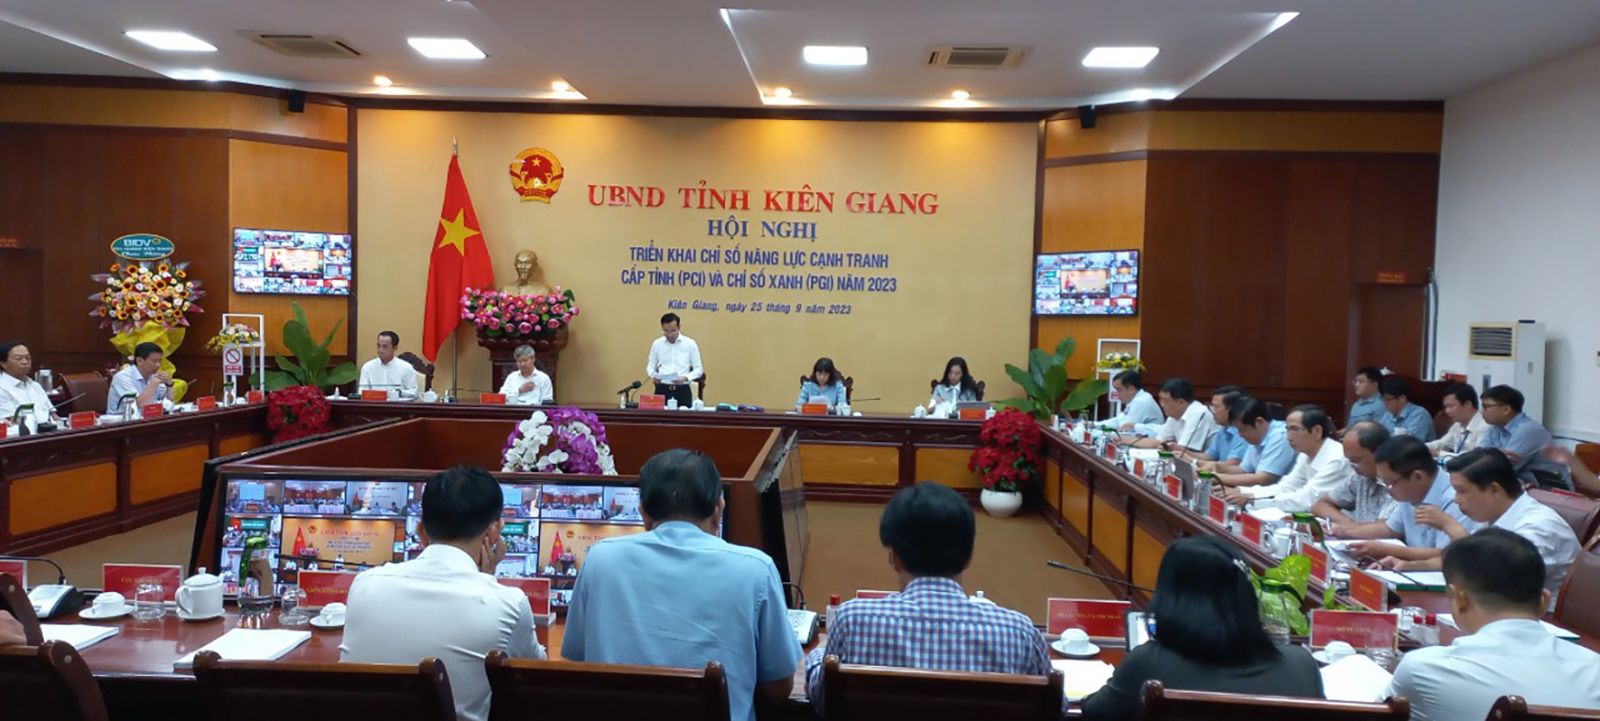  Hội nghị triển khai Chỉ số năng lực cạnh tranh cấp tỉnh (PCI) diễn ra vào ngày 25/9 tại Kiên Giang